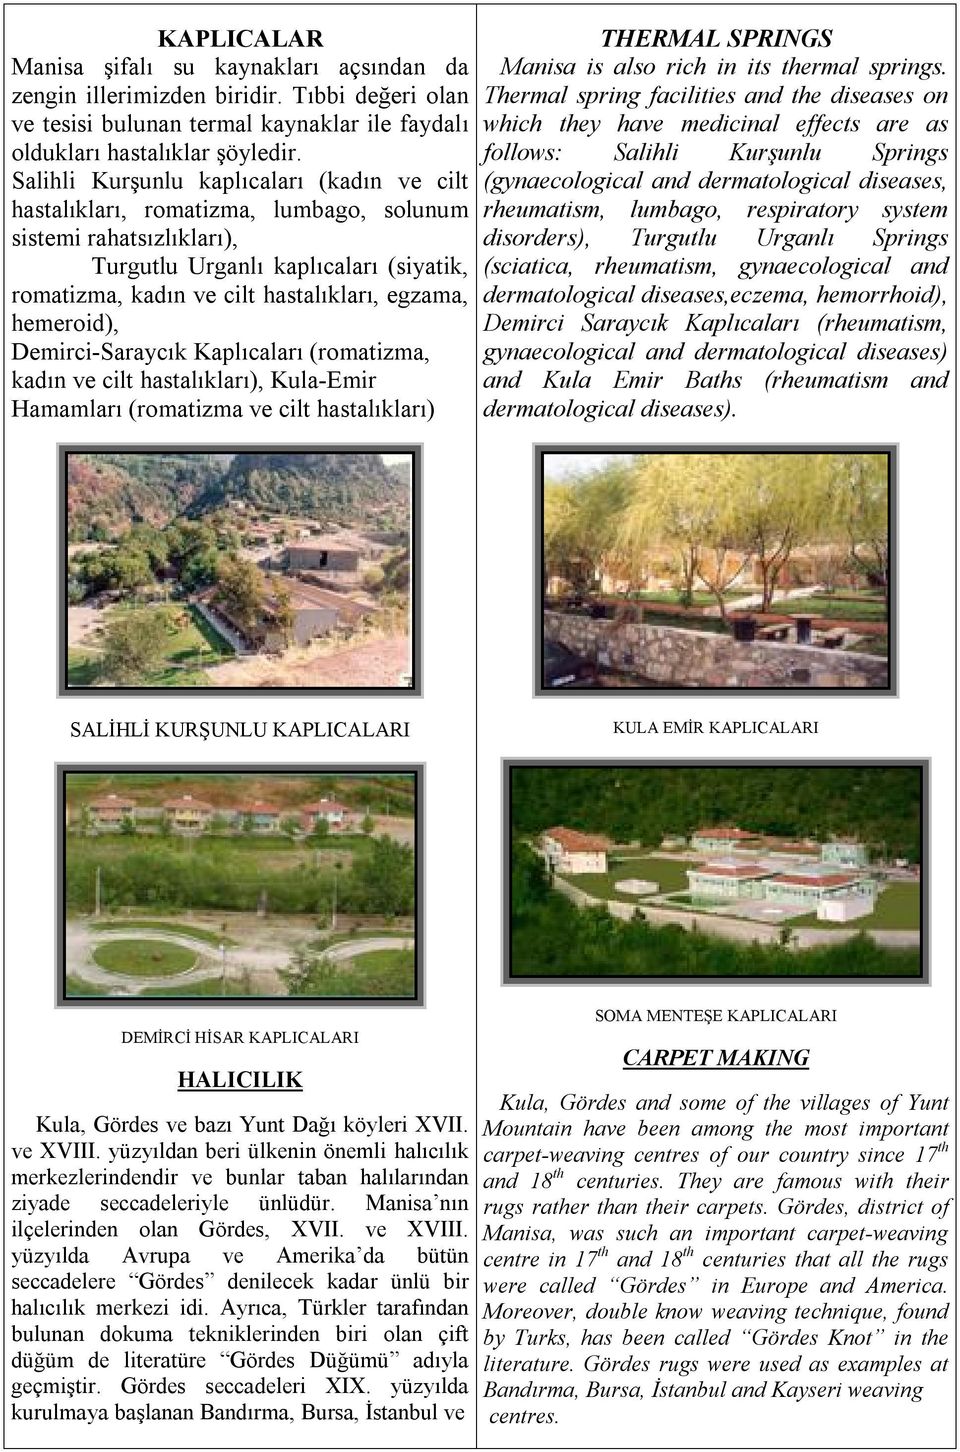 hemeroid), Demirci-Saraycık Kaplıcaları (romatizma, kadın ve cilt hastalıkları), Kula-Emir Hamamları (romatizma ve cilt hastalıkları) THERMAL SPRINGS Manisa is also rich in its thermal springs.